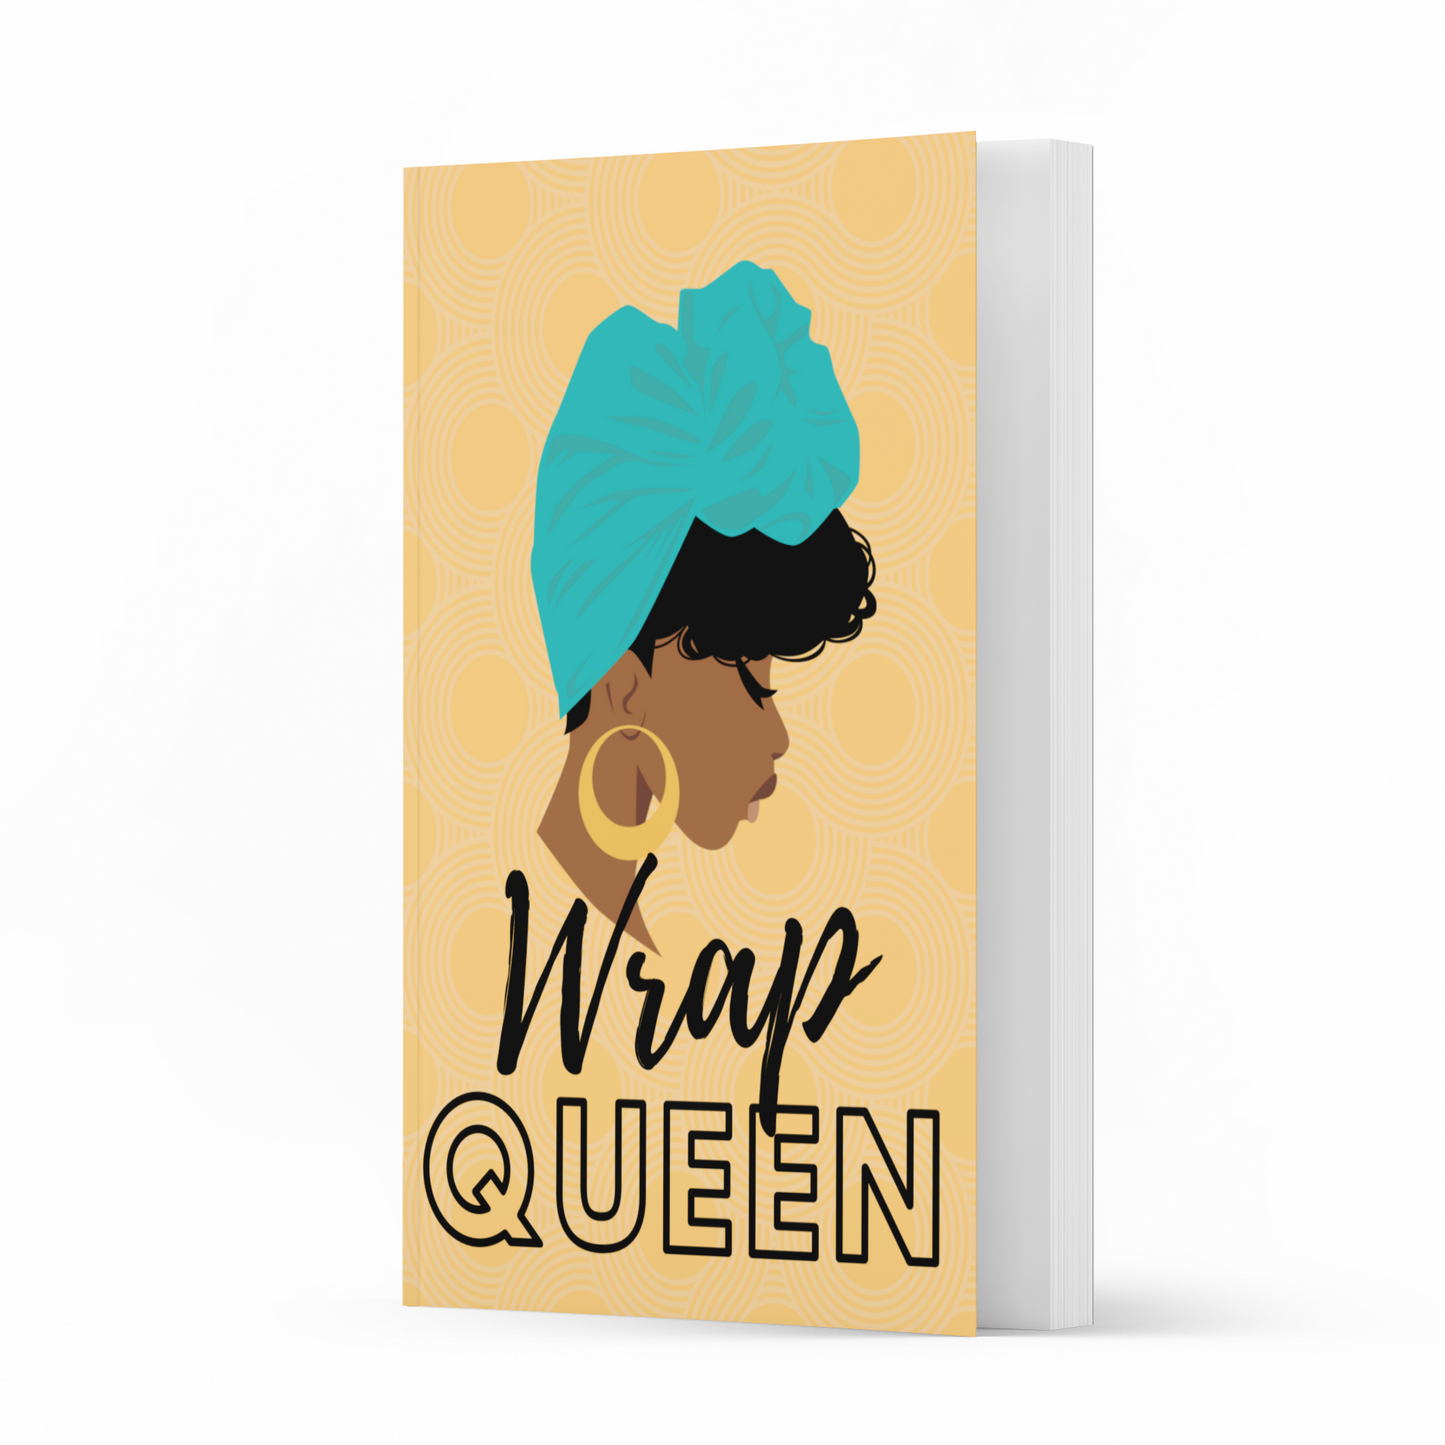 Wrap Queen Journal